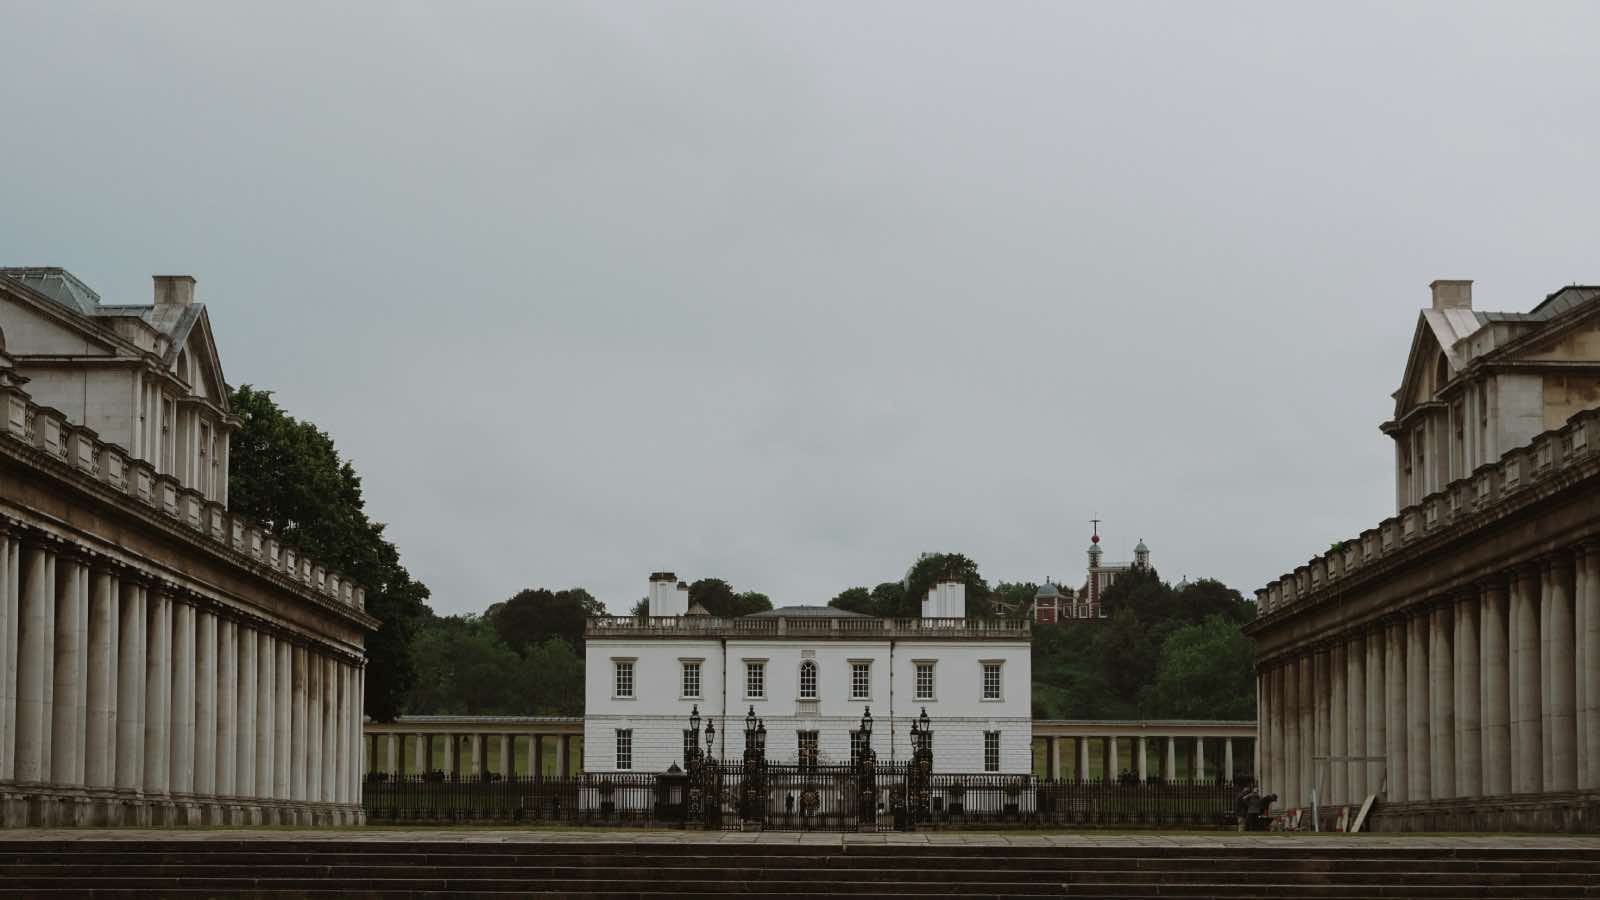 Queen's House en Greenwich, londres. arquitectura renacentista